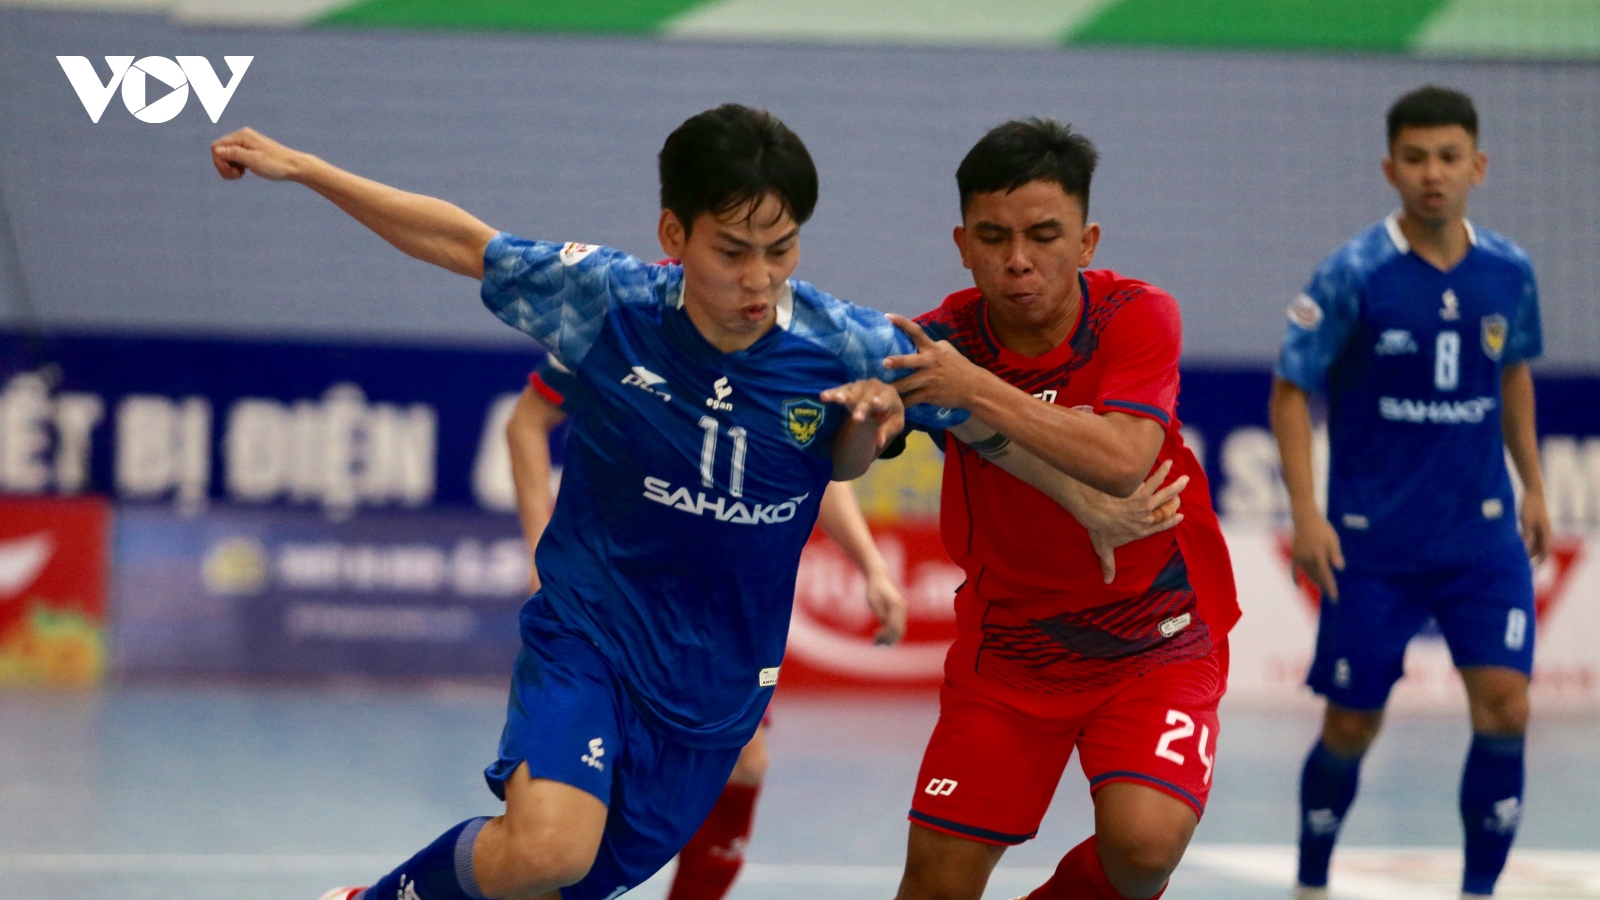 Giải Futsal HDBank VĐQG 2021: Sahako 8-2 Tân Hiệp Hưng